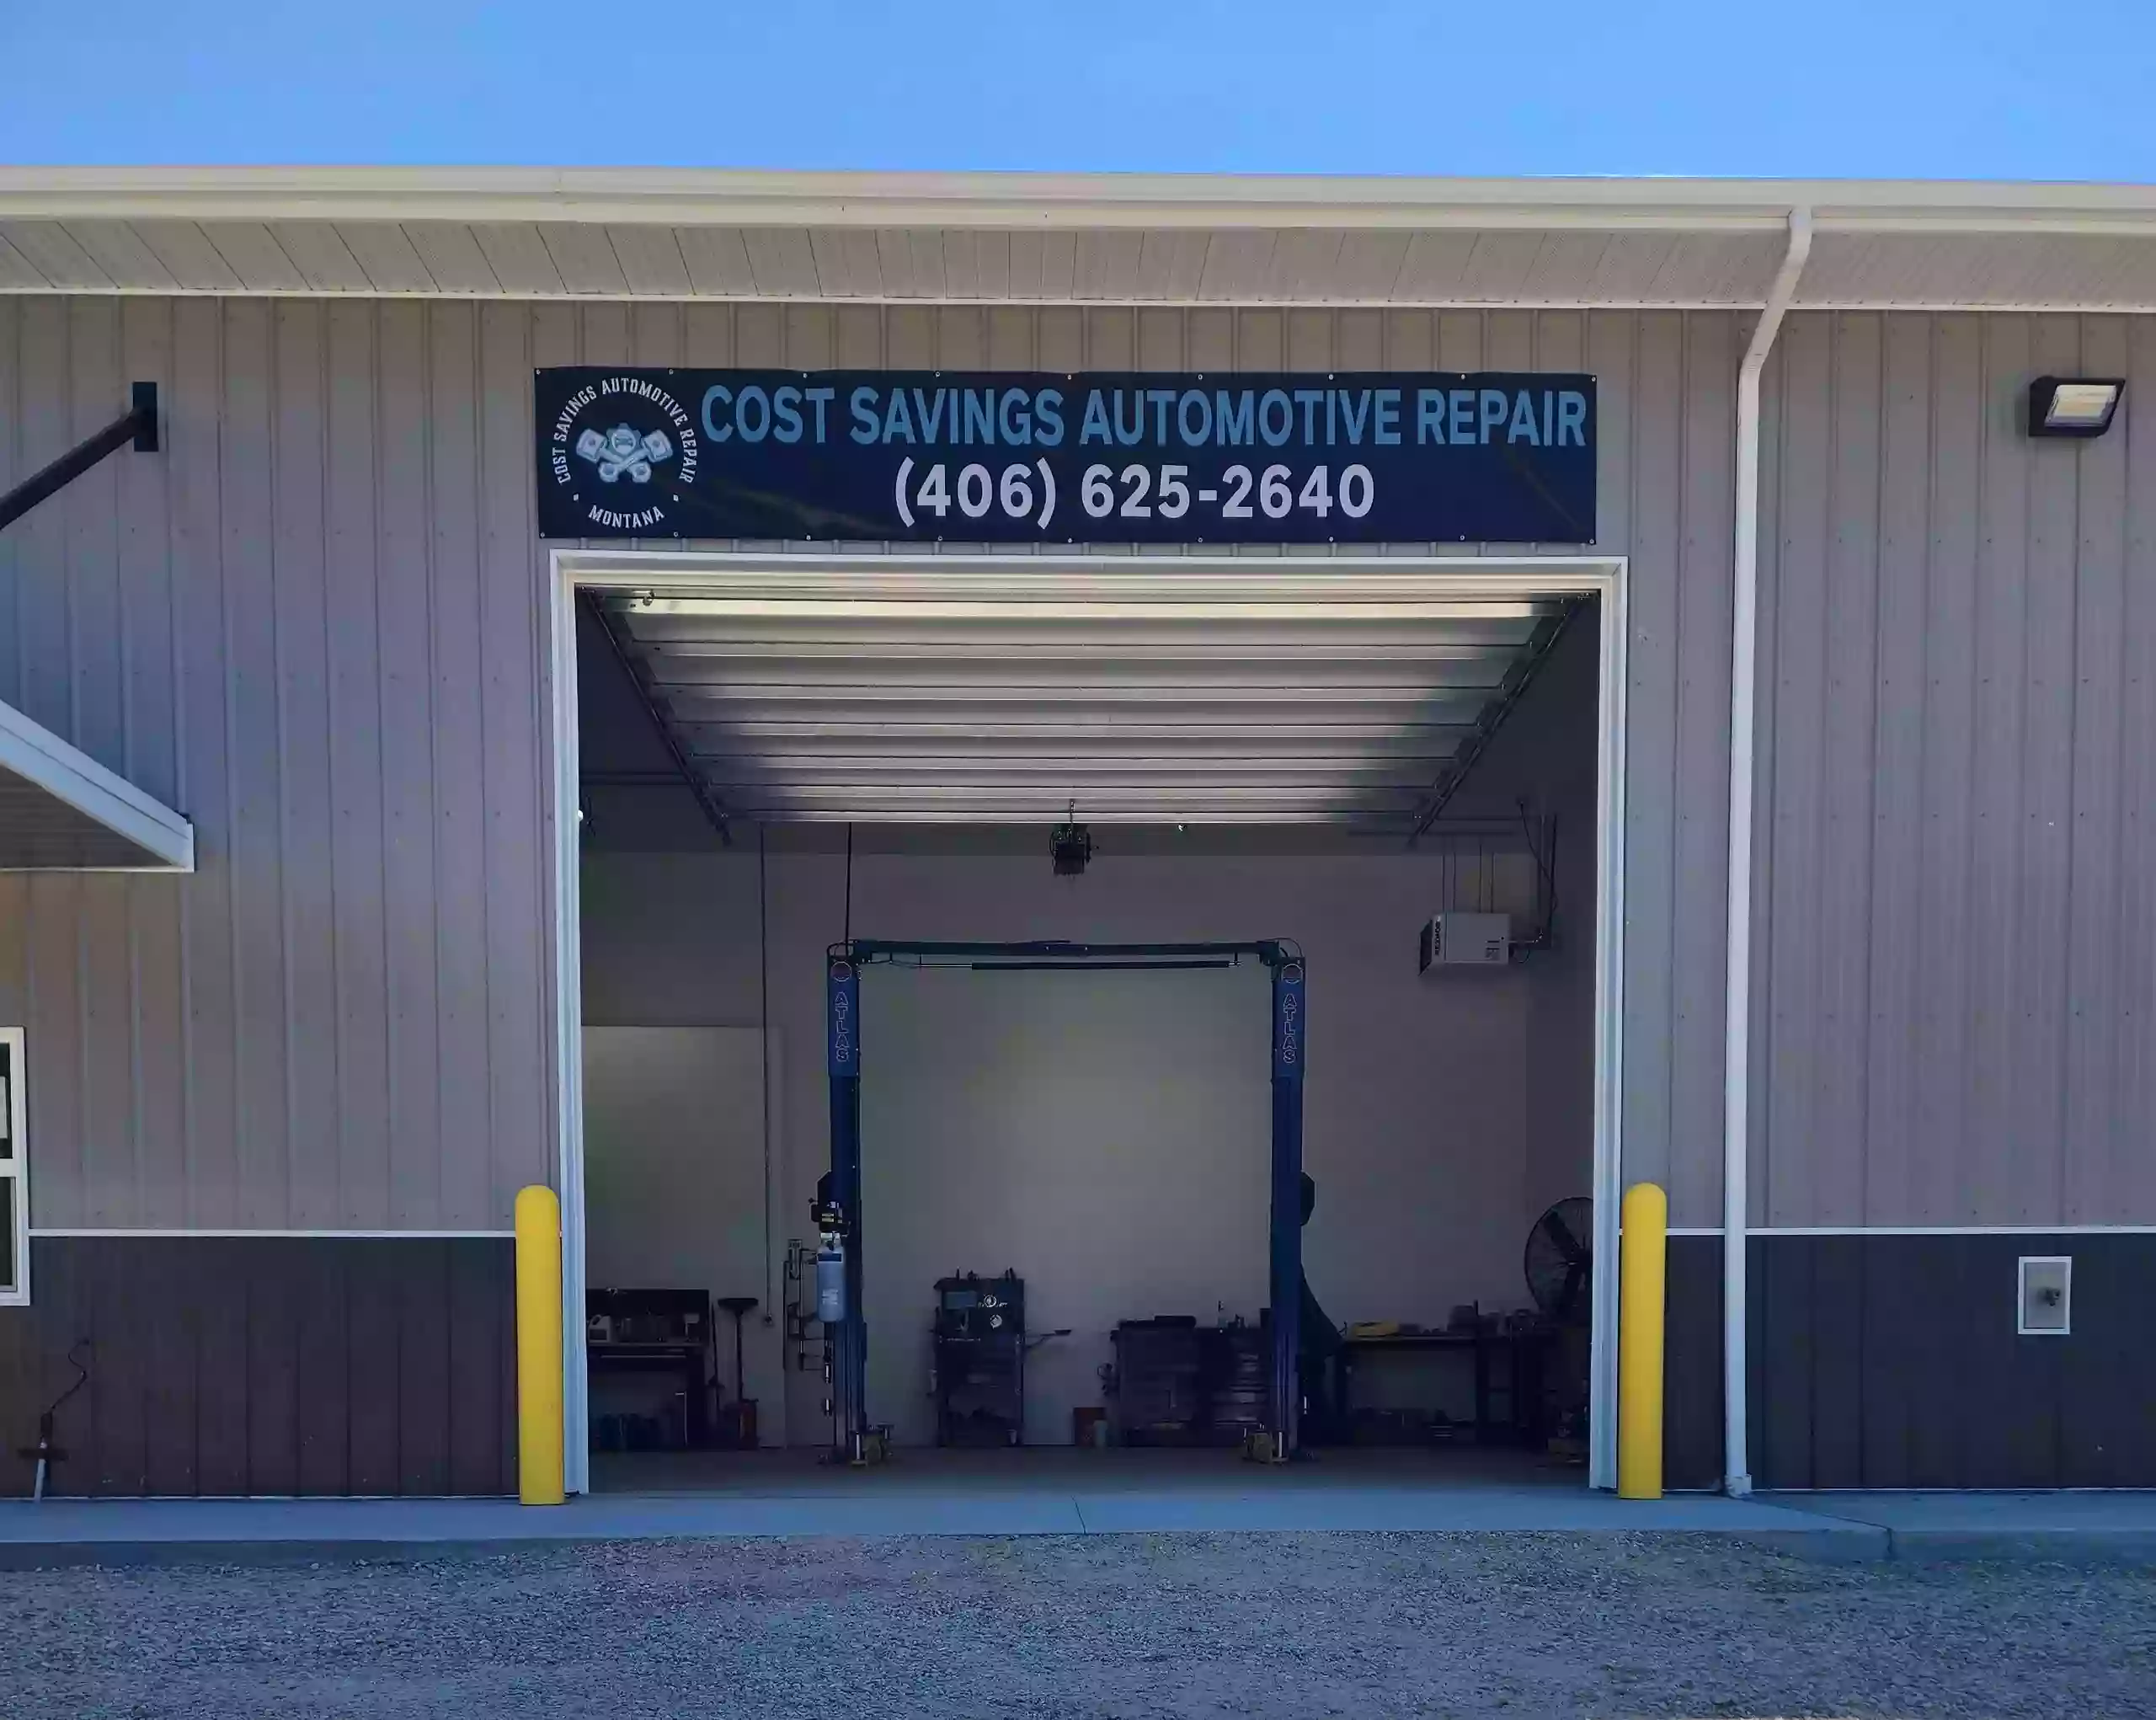 Cost Savings Automotive Repair LLC